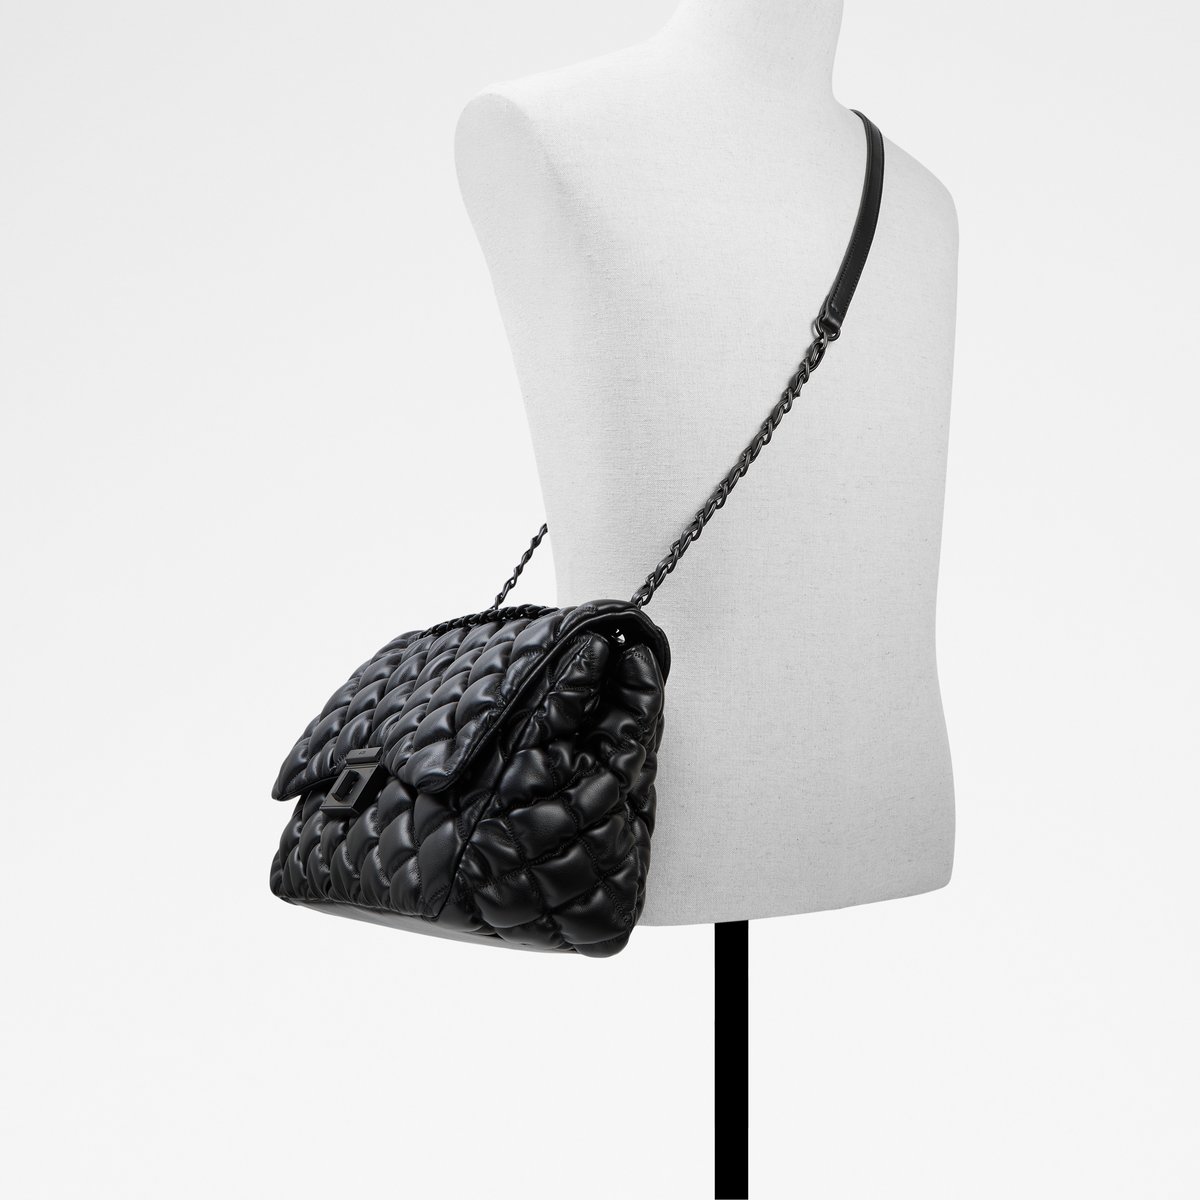 Ocalevia Black Women's Shoulder Bags | ALDO US